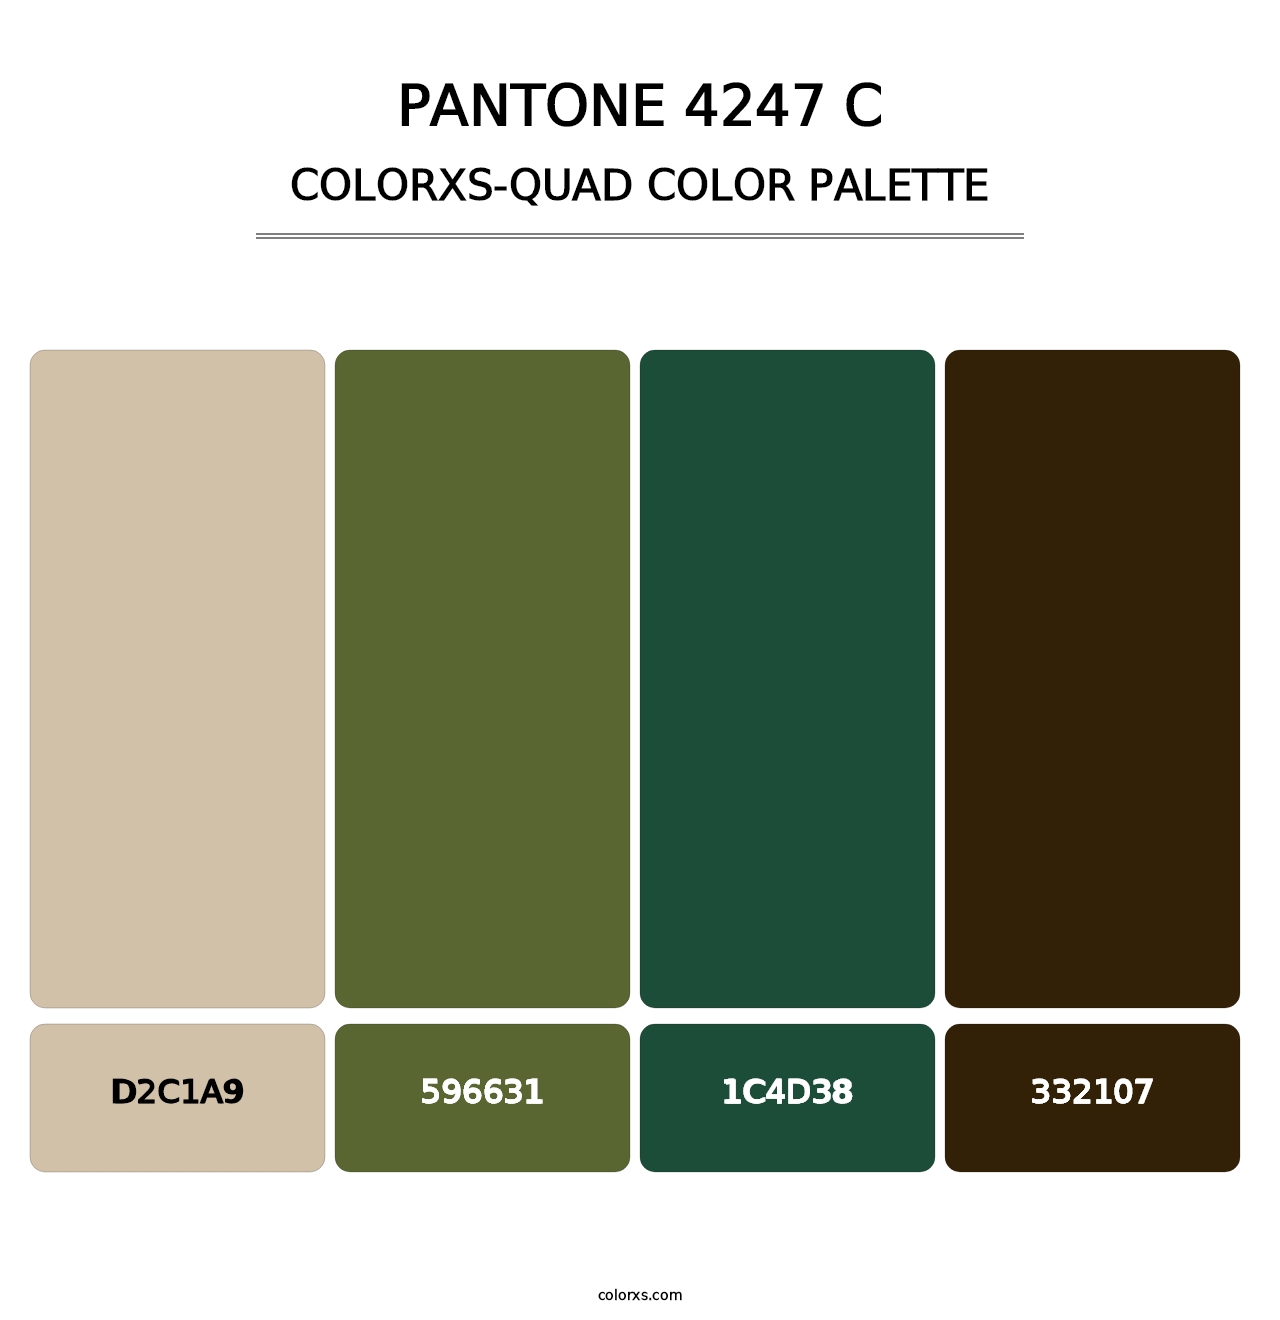 PANTONE 4247 C - Colorxs Quad Palette